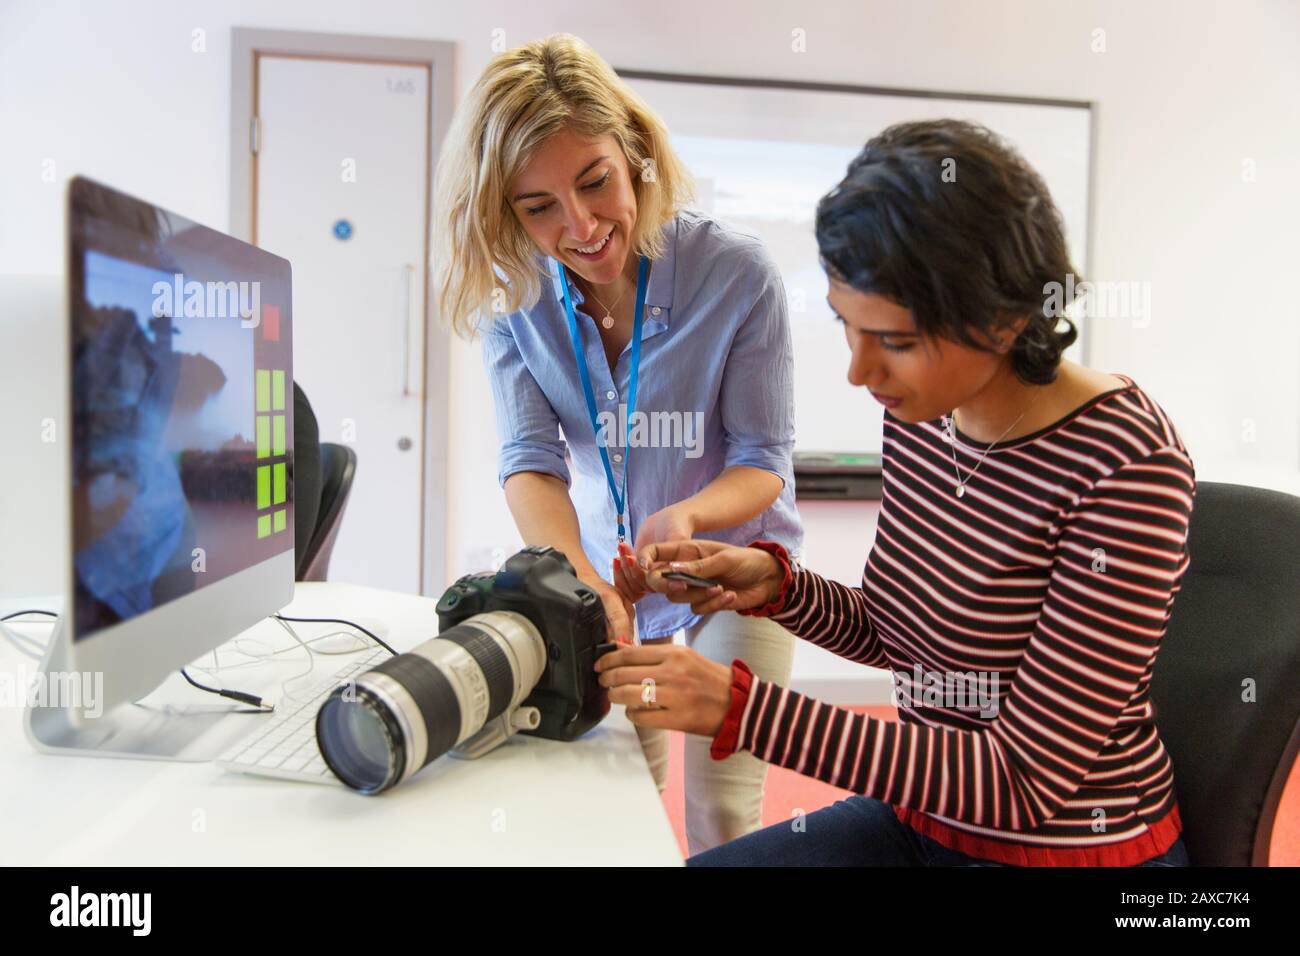 Photographe féminin enseignant aux étudiants comment utiliser l'appareil photo SLR Banque D'Images